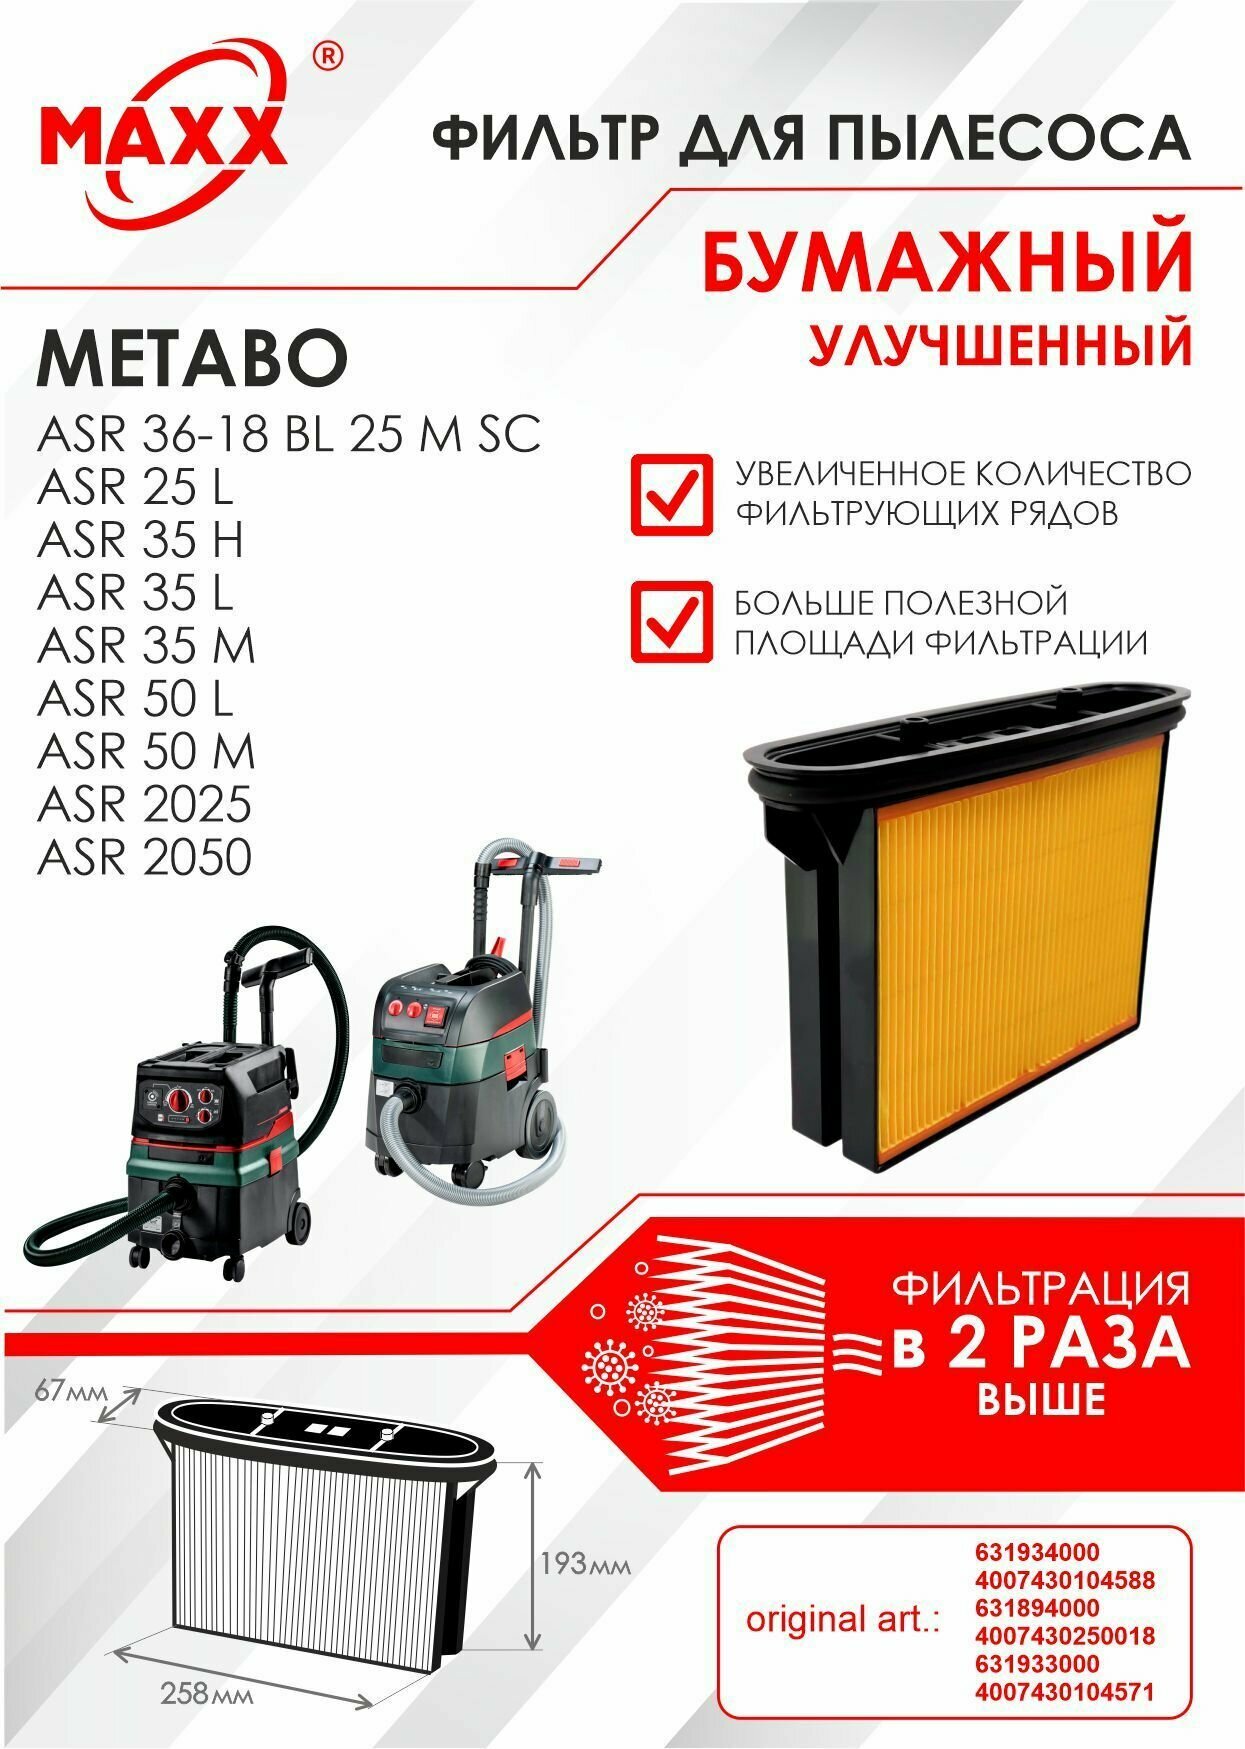 Фильтр складчатый бумажный улучшенный для пылесоса Metabo ASR 25, 35, 50, 2025, 2050, Metabo ASR 36-18 BL 25 M SC